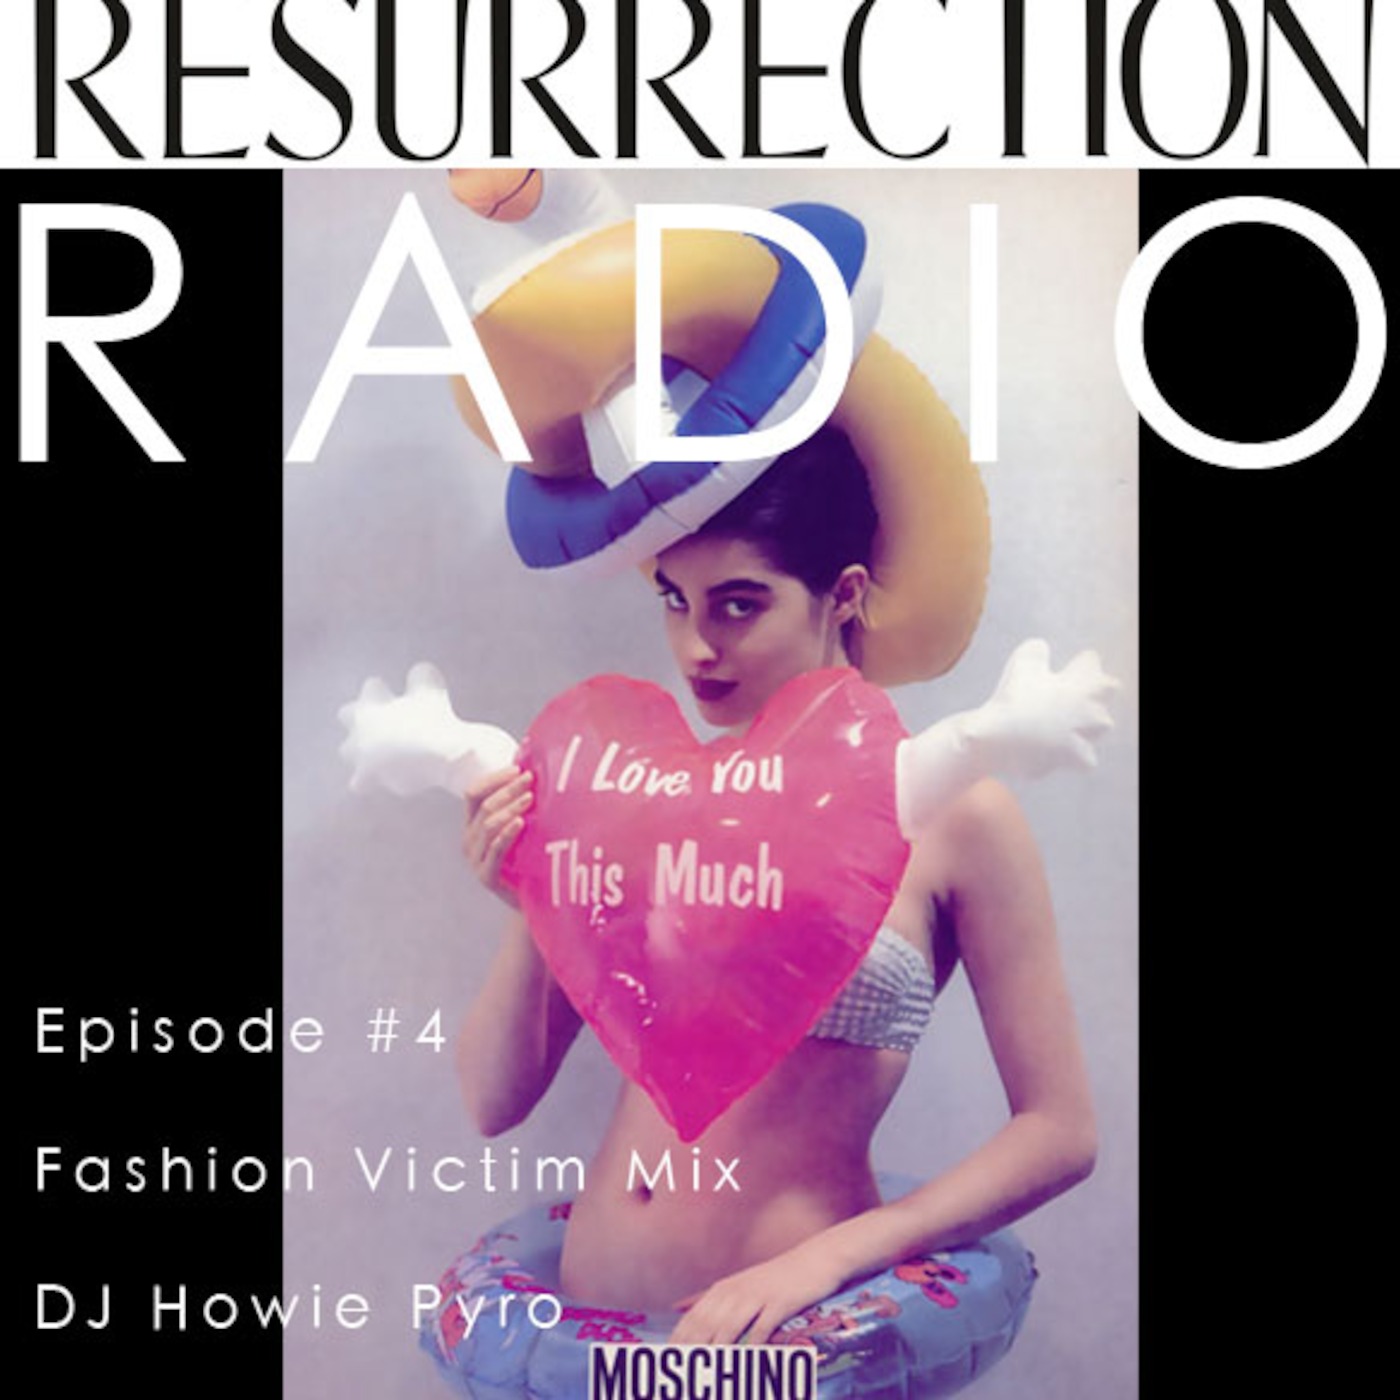 Resurrection Radio Episode 4 - Fashion Victim Mix (Moschino)